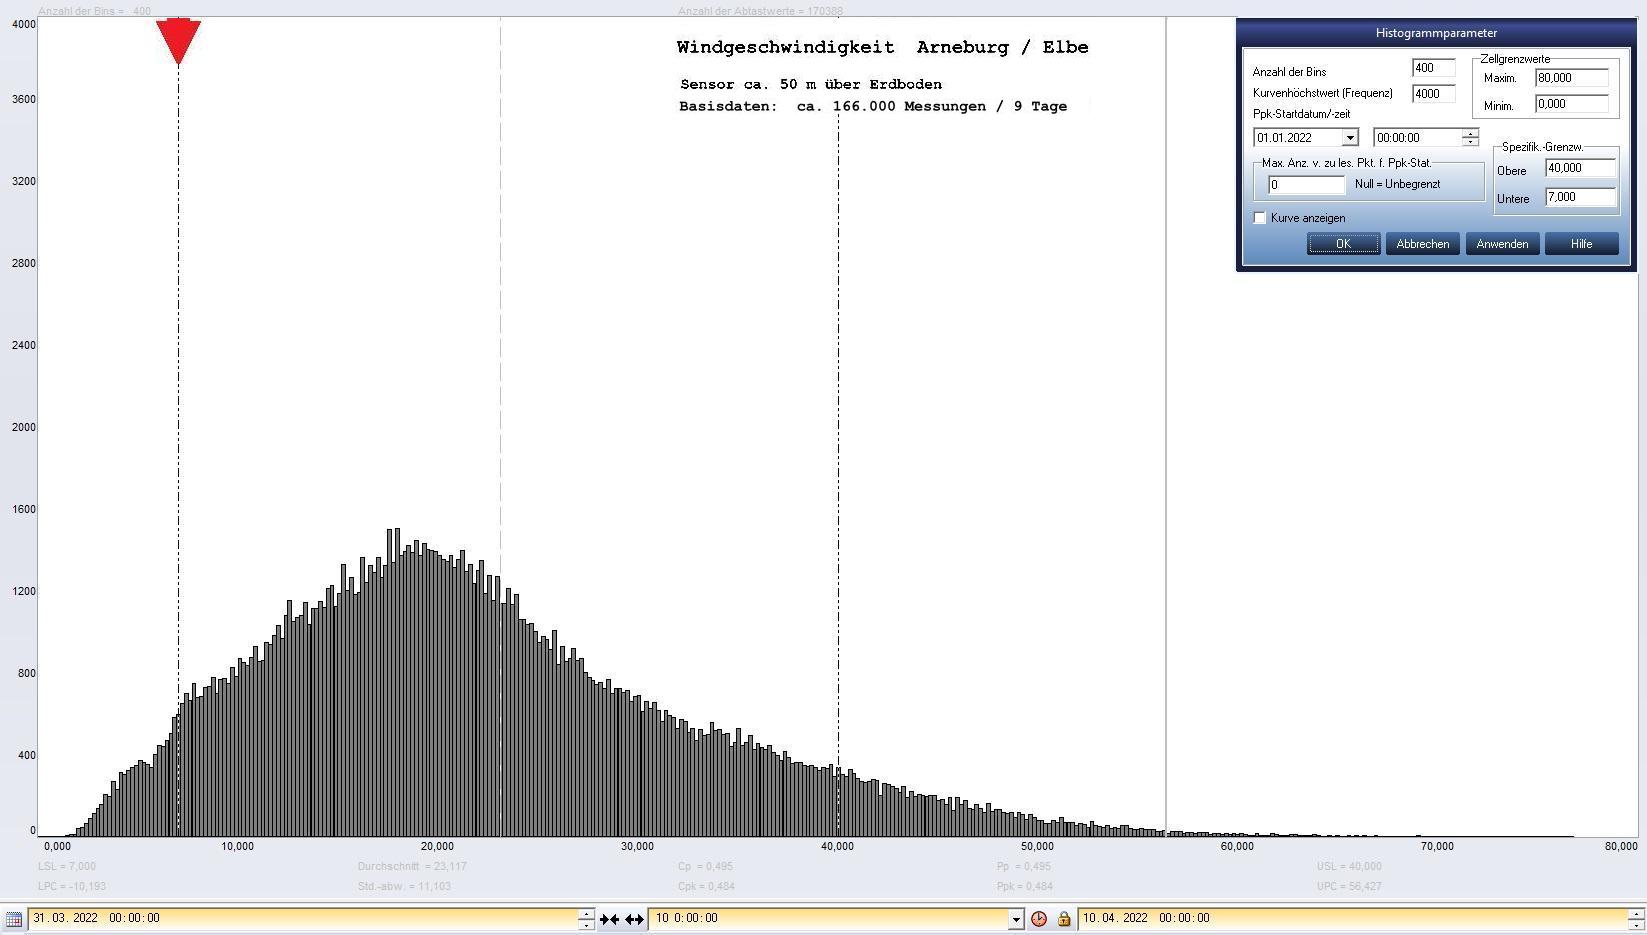 Arneburg 9 Tage Histogramm Winddaten, ab 31.03.2022 
  Sensor auf Gebude, ca. 50 m ber Erdboden, Basis: 5s-Aufzeichnung